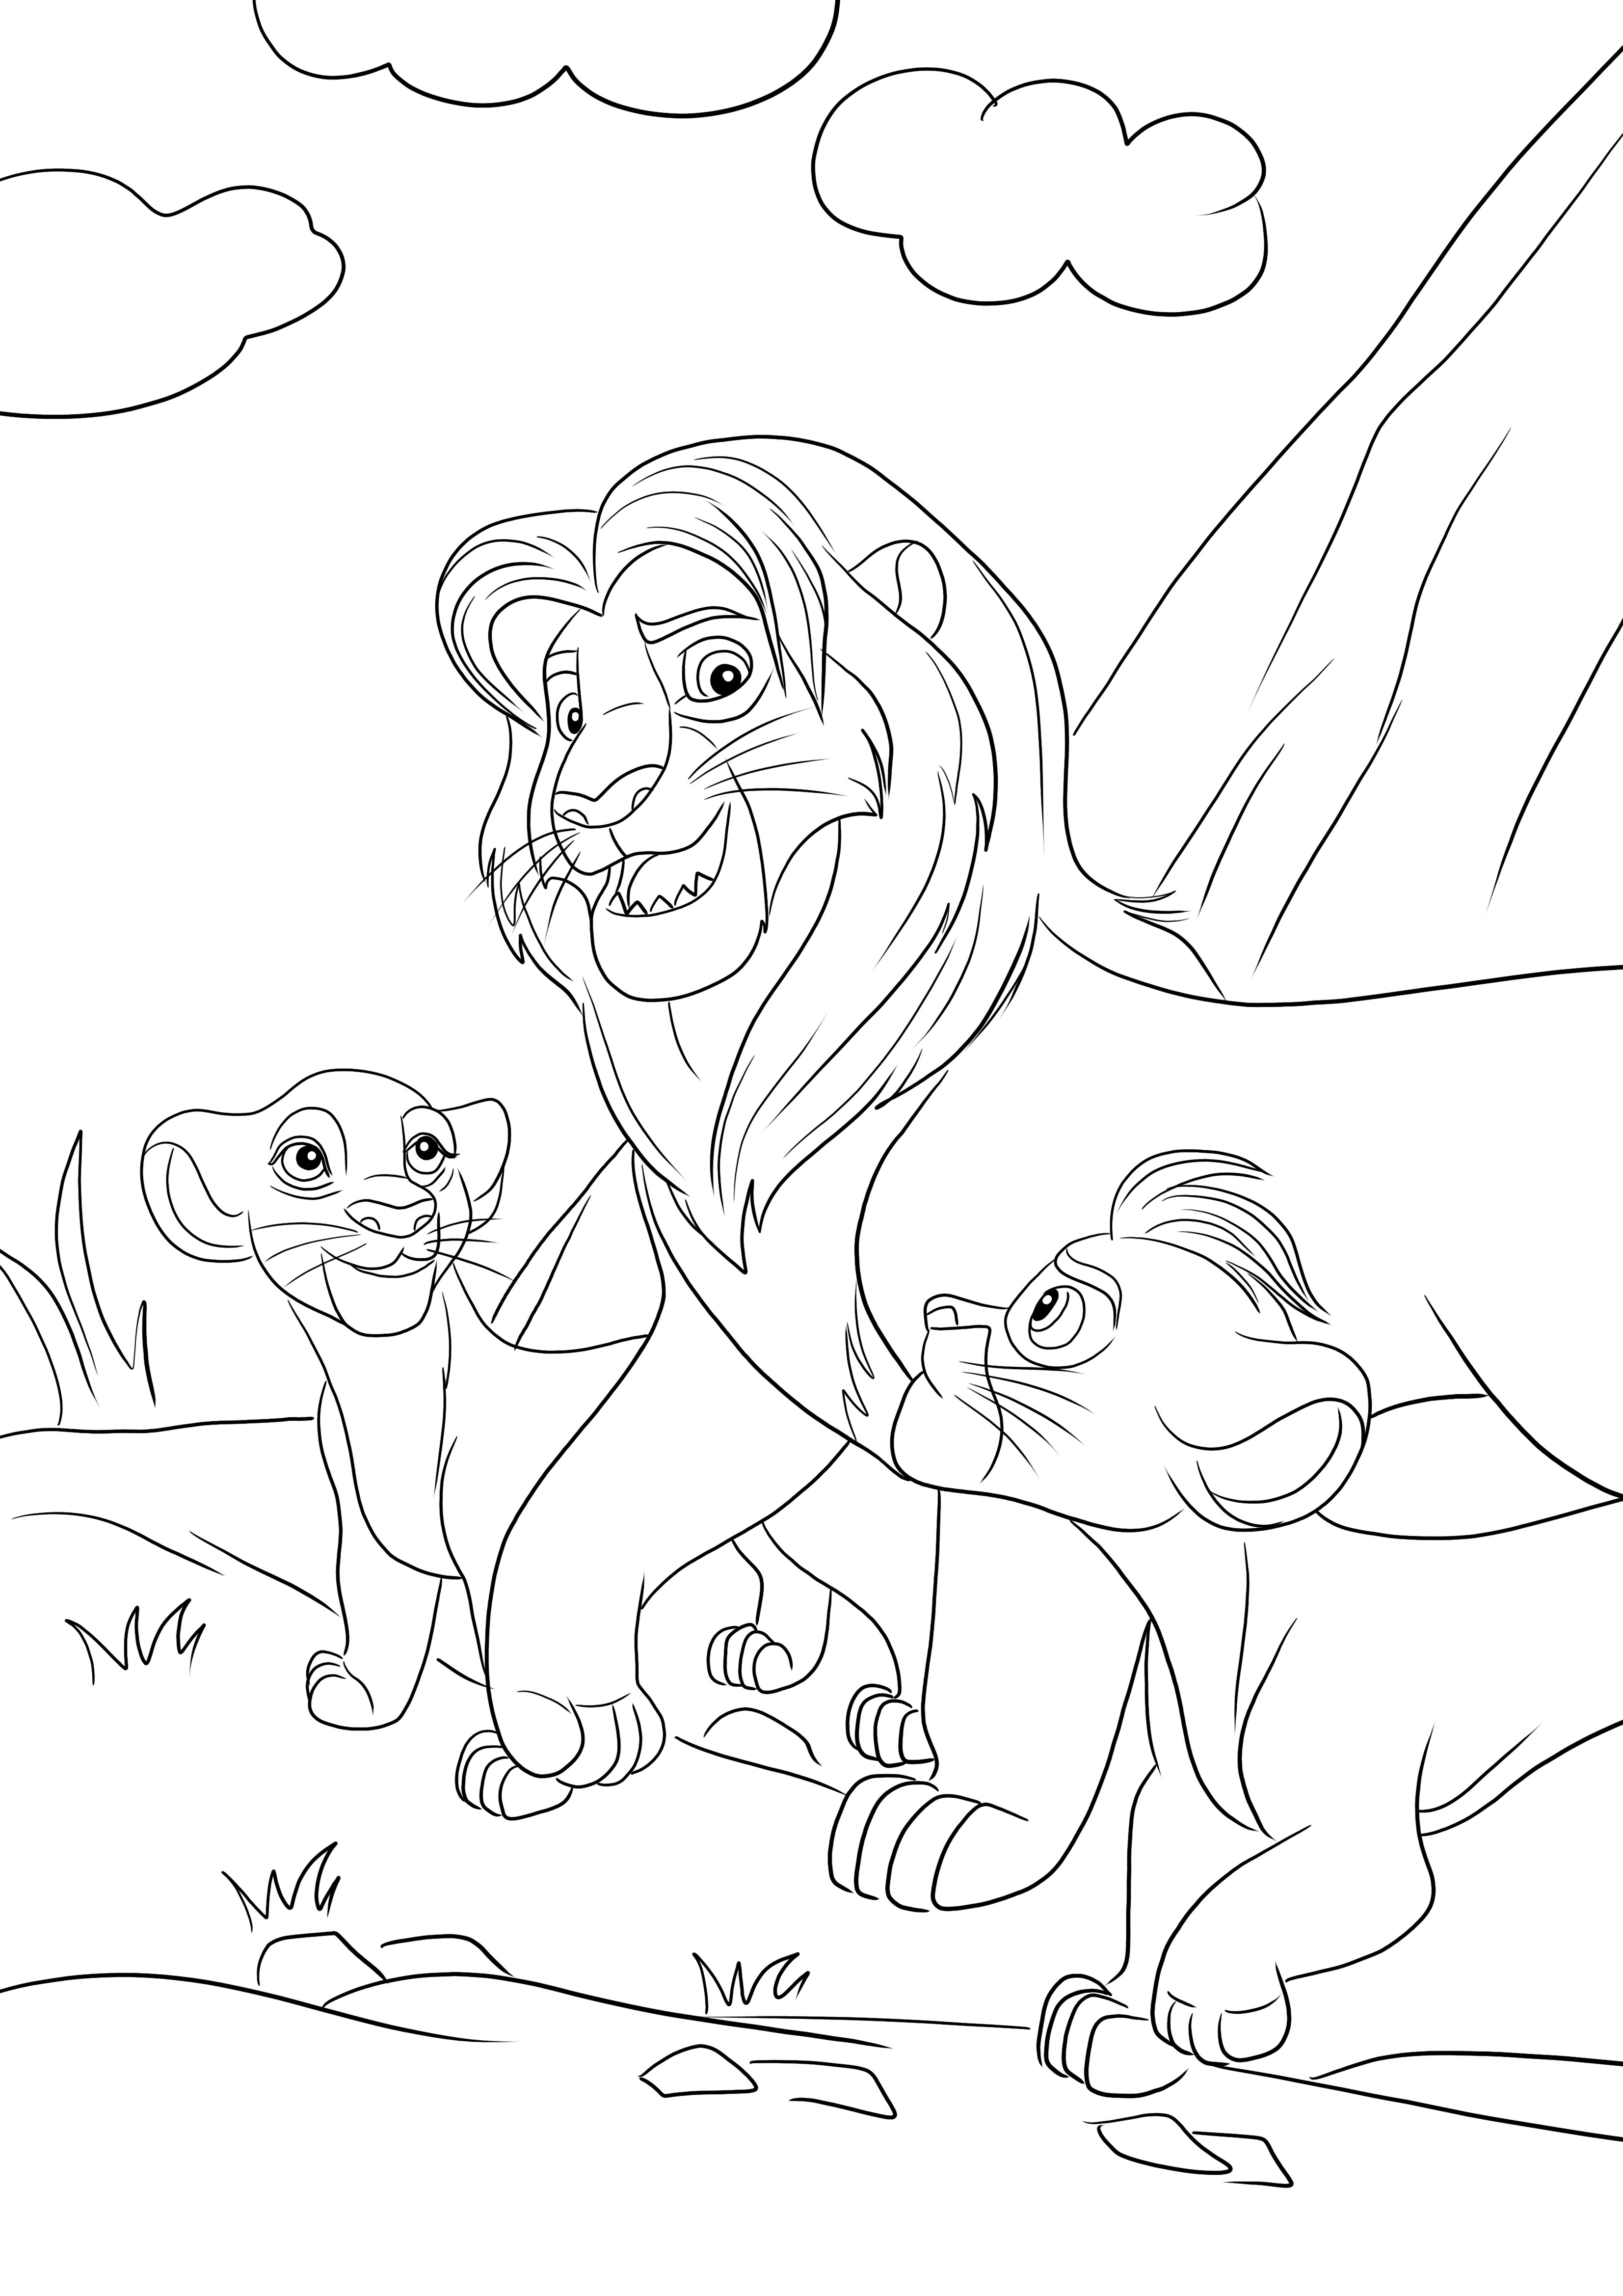 Colorazione gratuita di Simba e dei suoi due figli Kiara e Kion da scaricare e colorare